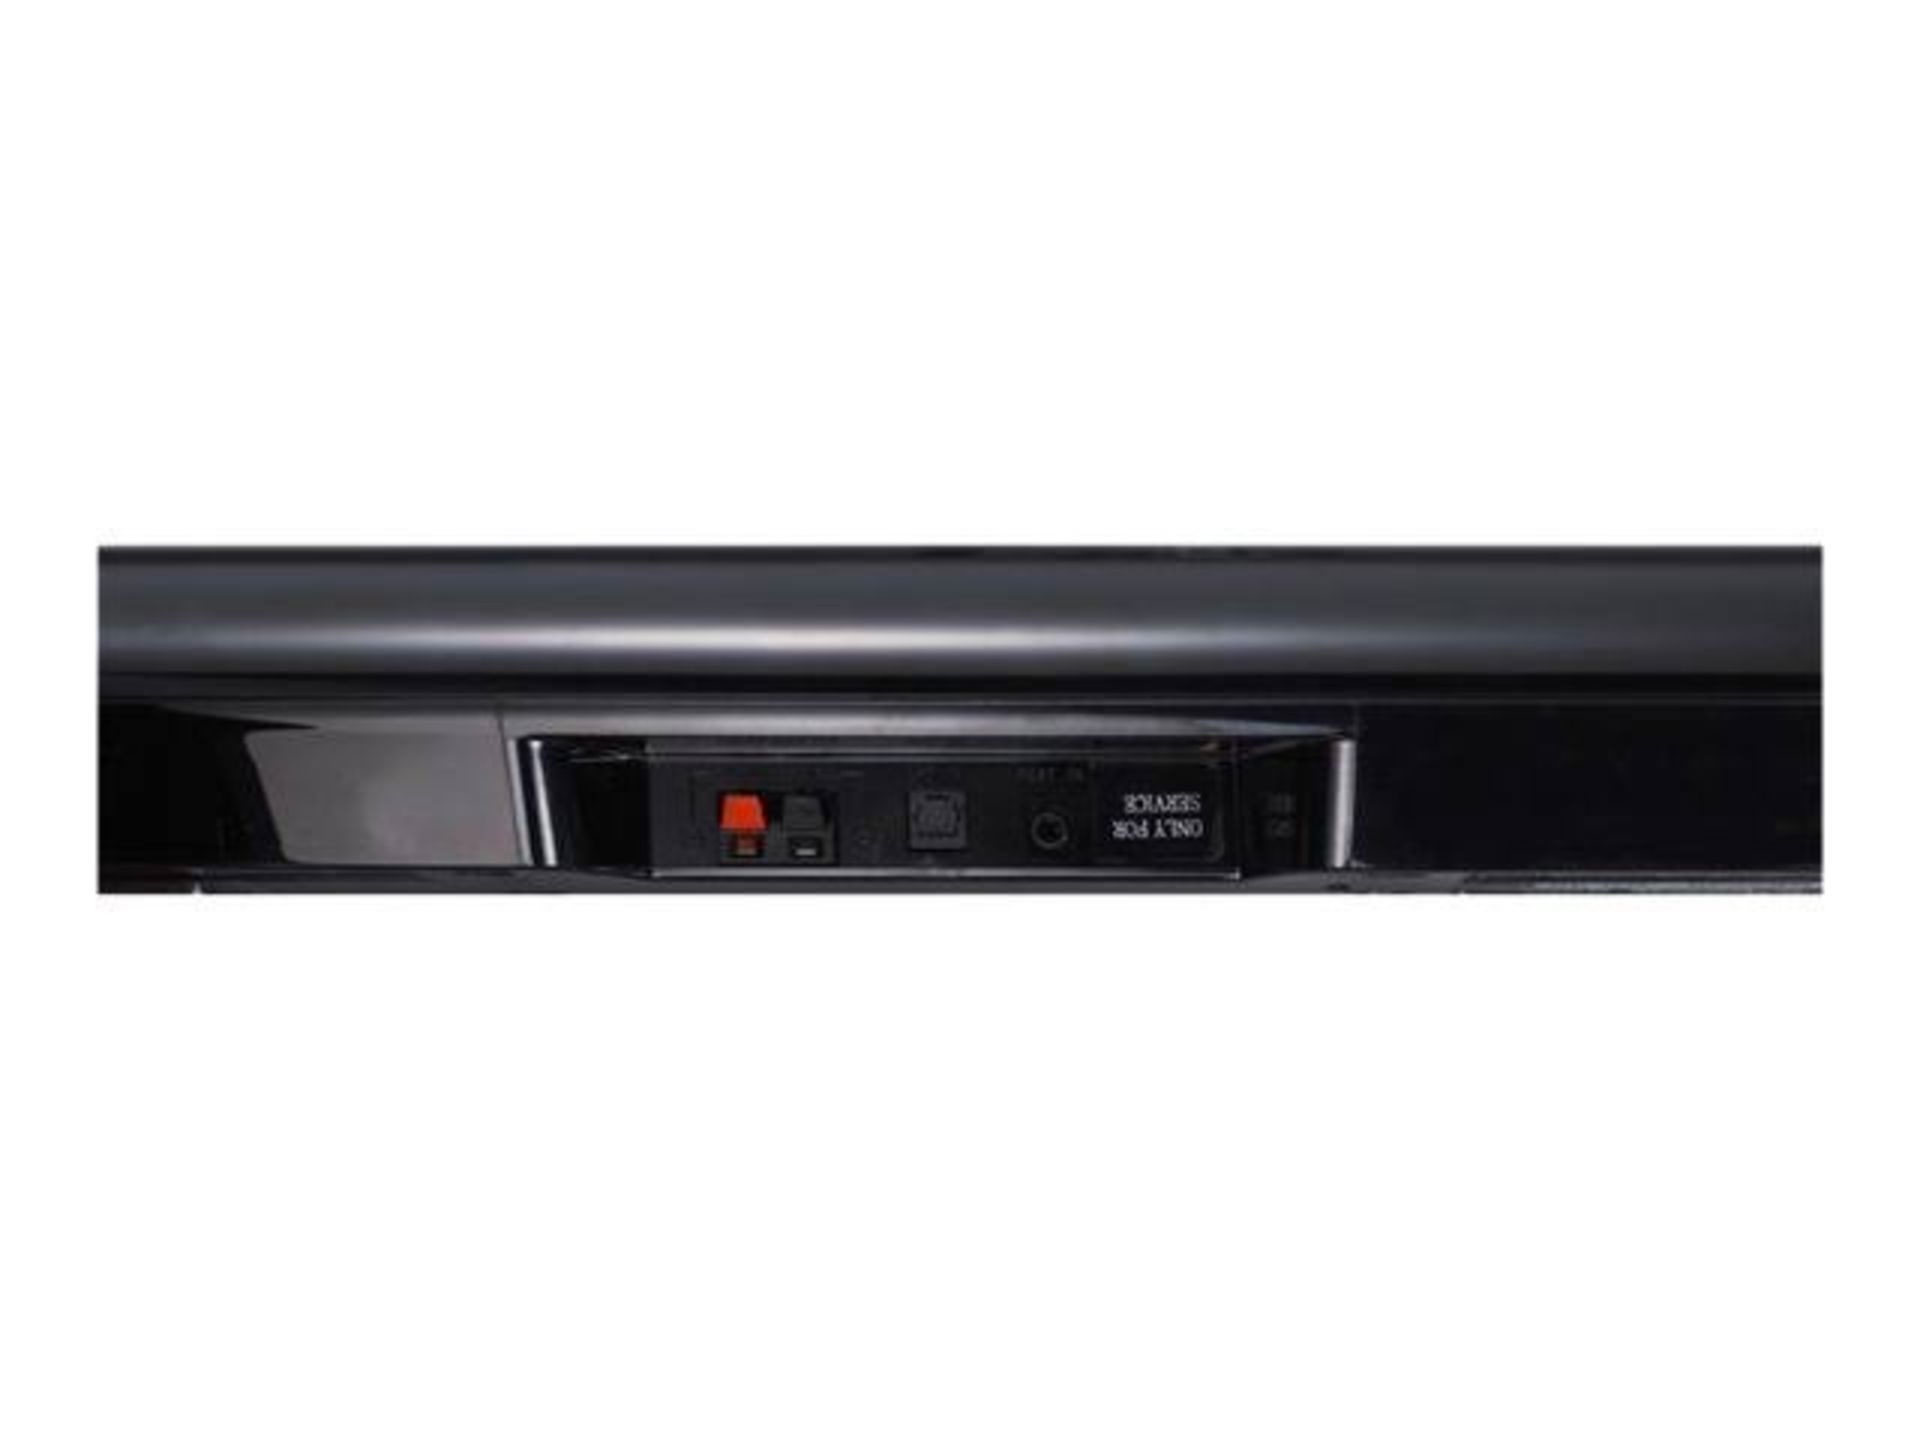 V Grade A NB2540 LG 120W Home Cinema Soundbar System 2.1 With Sub - Image 6 of 10